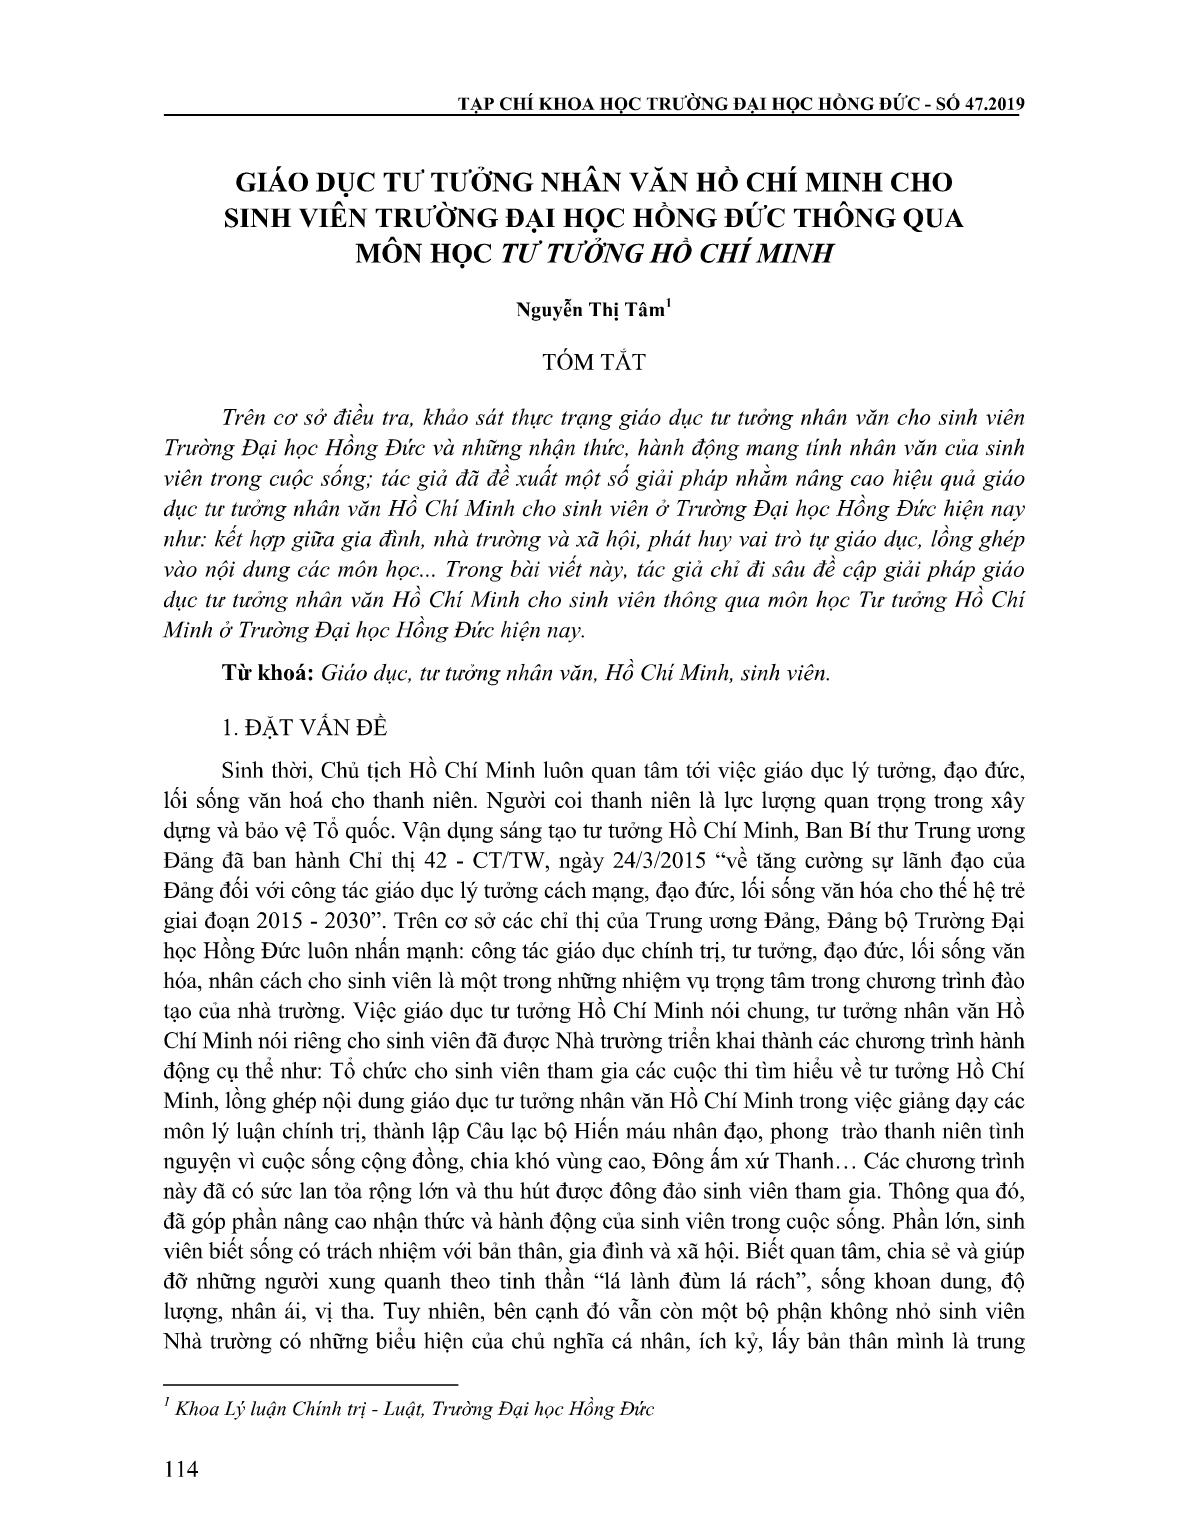 Giáo dục tư tưởng nhân văn Hồ Chí Minh cho sinh viên Trường Đại học Hồng Đức thông qua môn học Tư tưởng Hồ Chí Minh trang 1